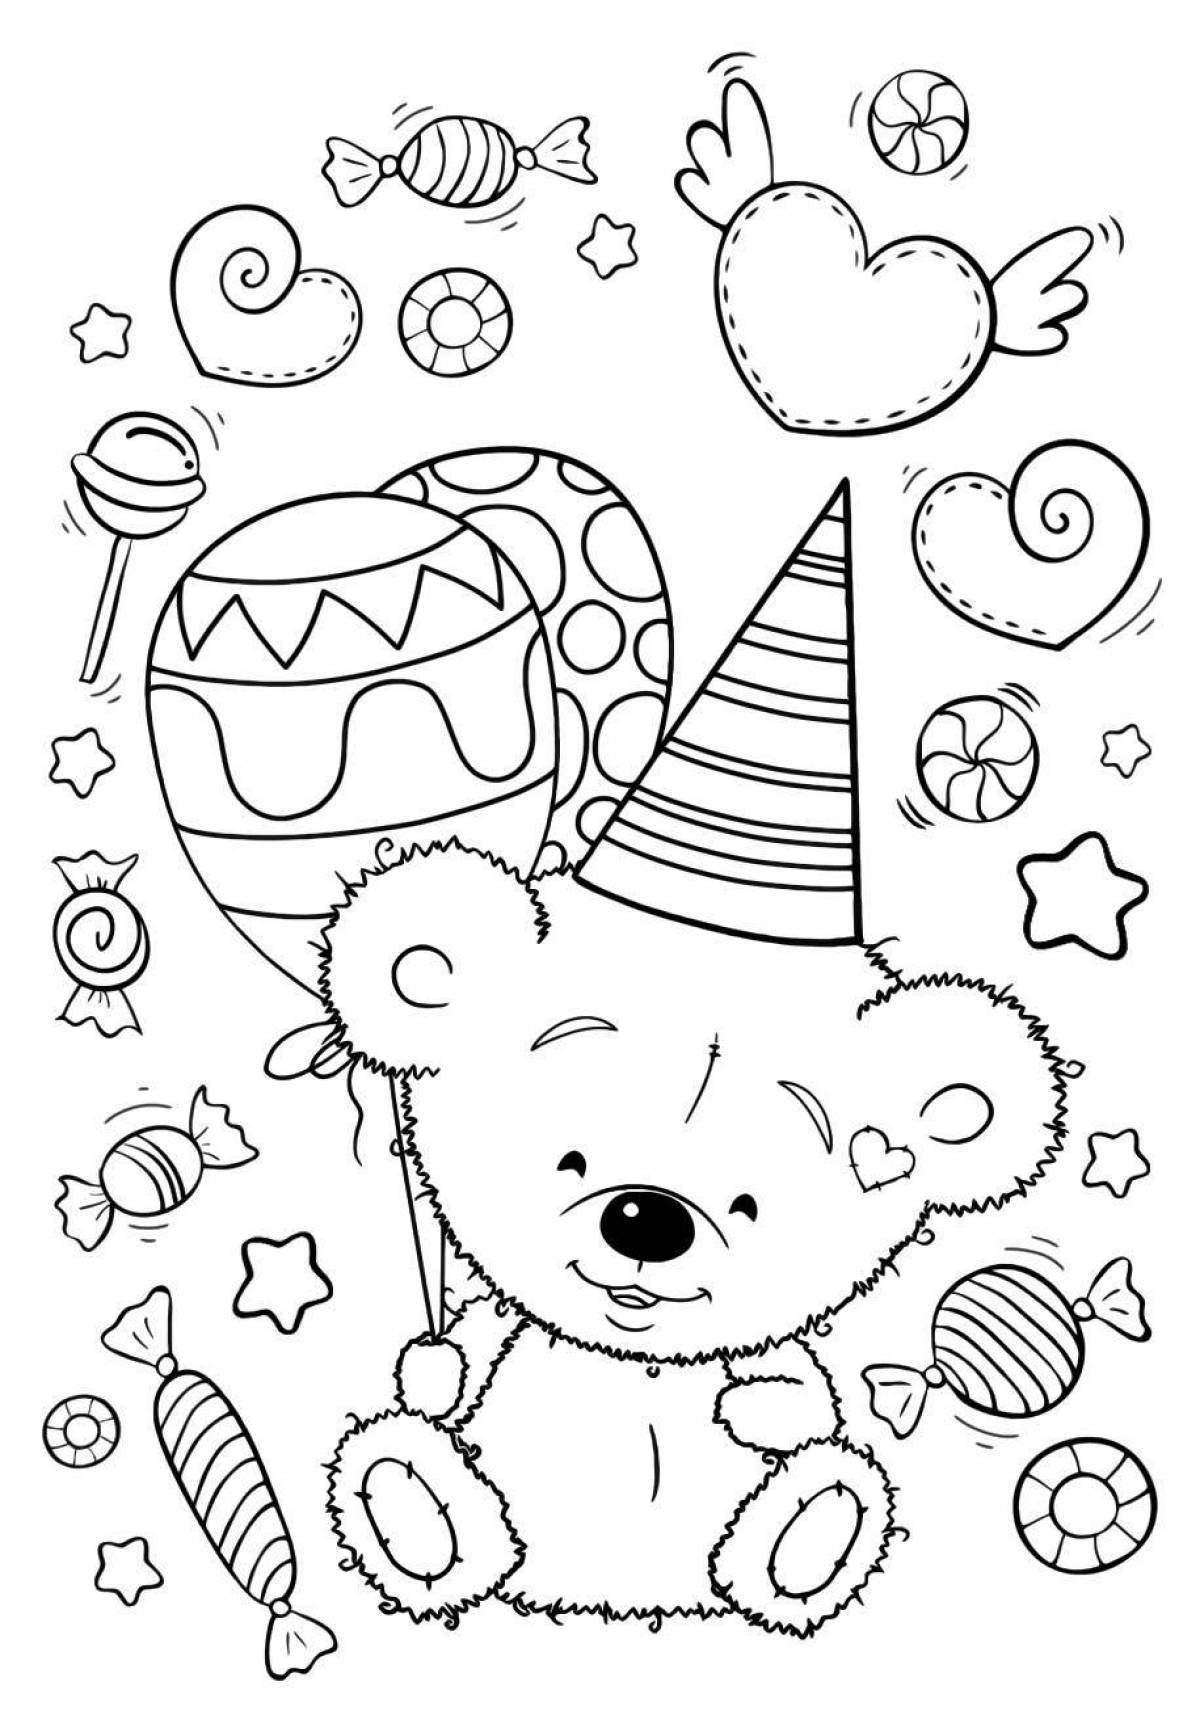 Adorable teddy bear with balloons